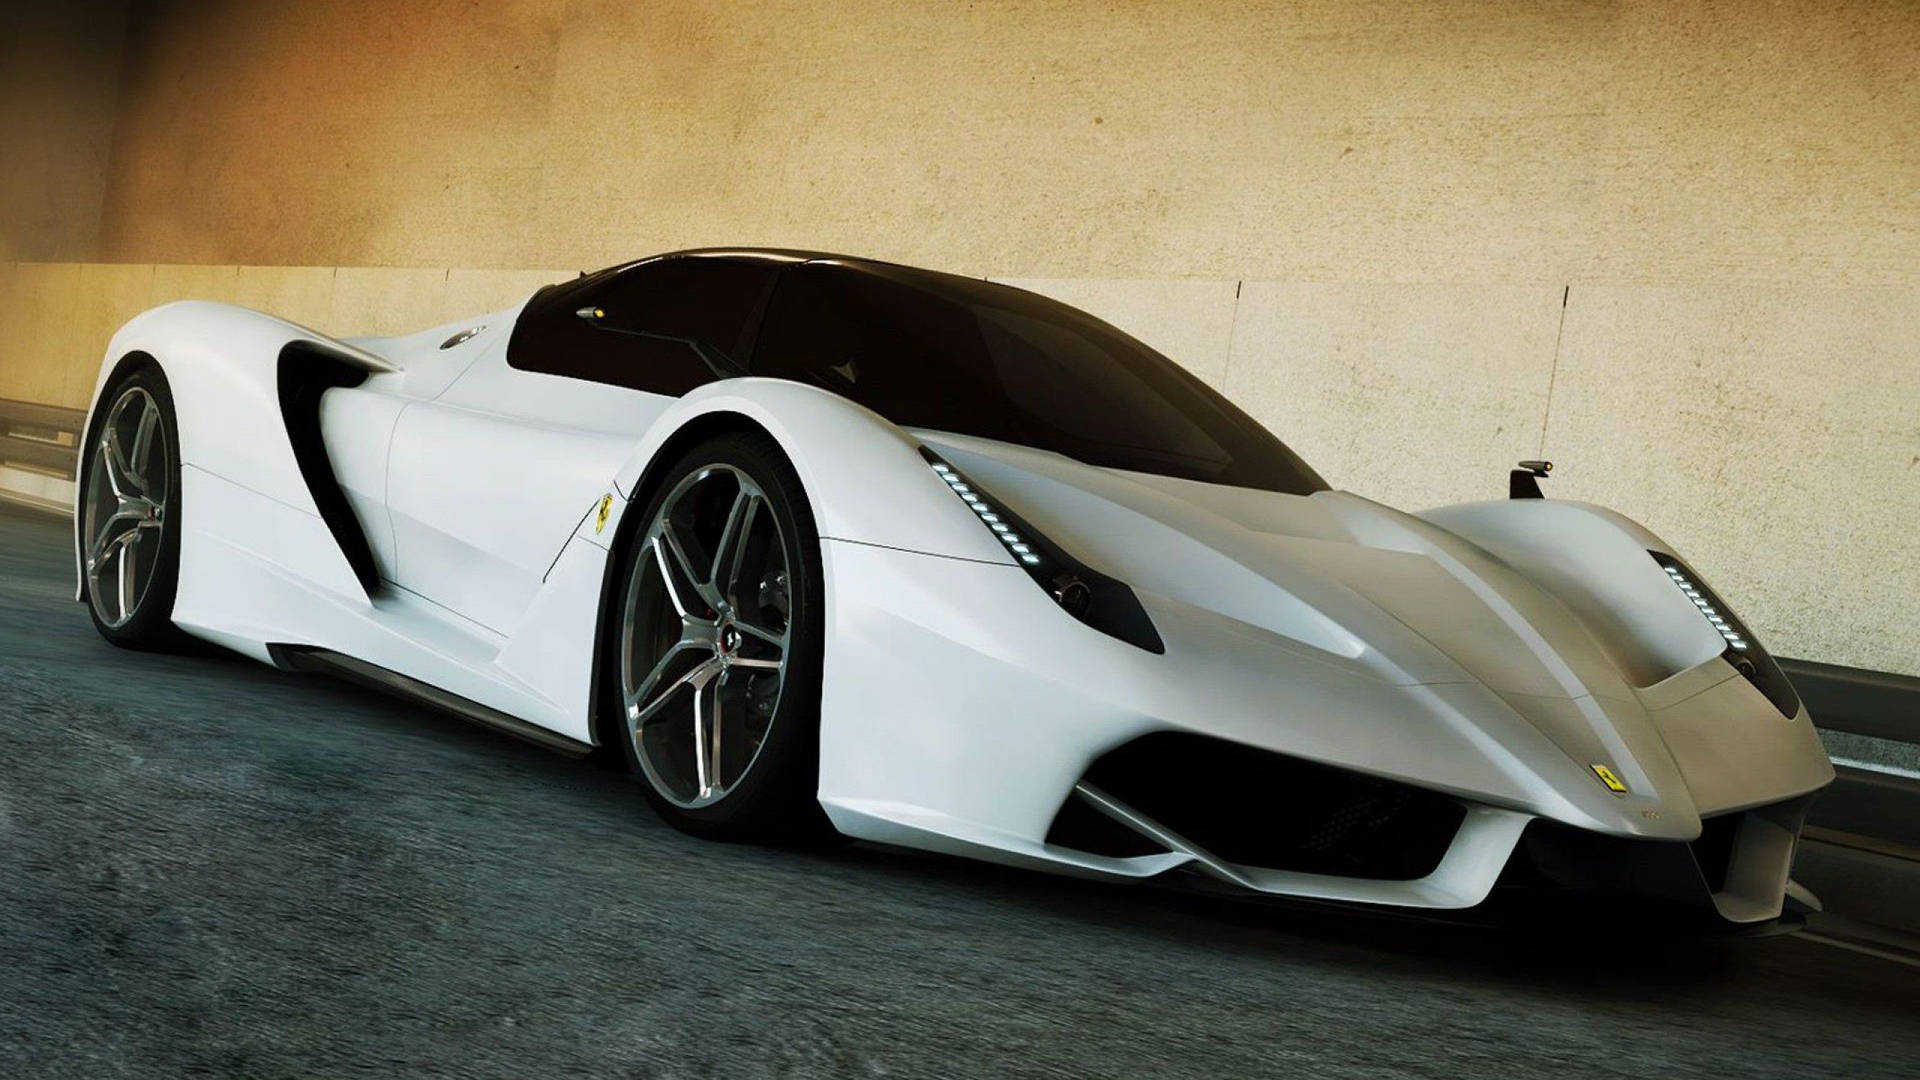 White Ferrari Supercar Background